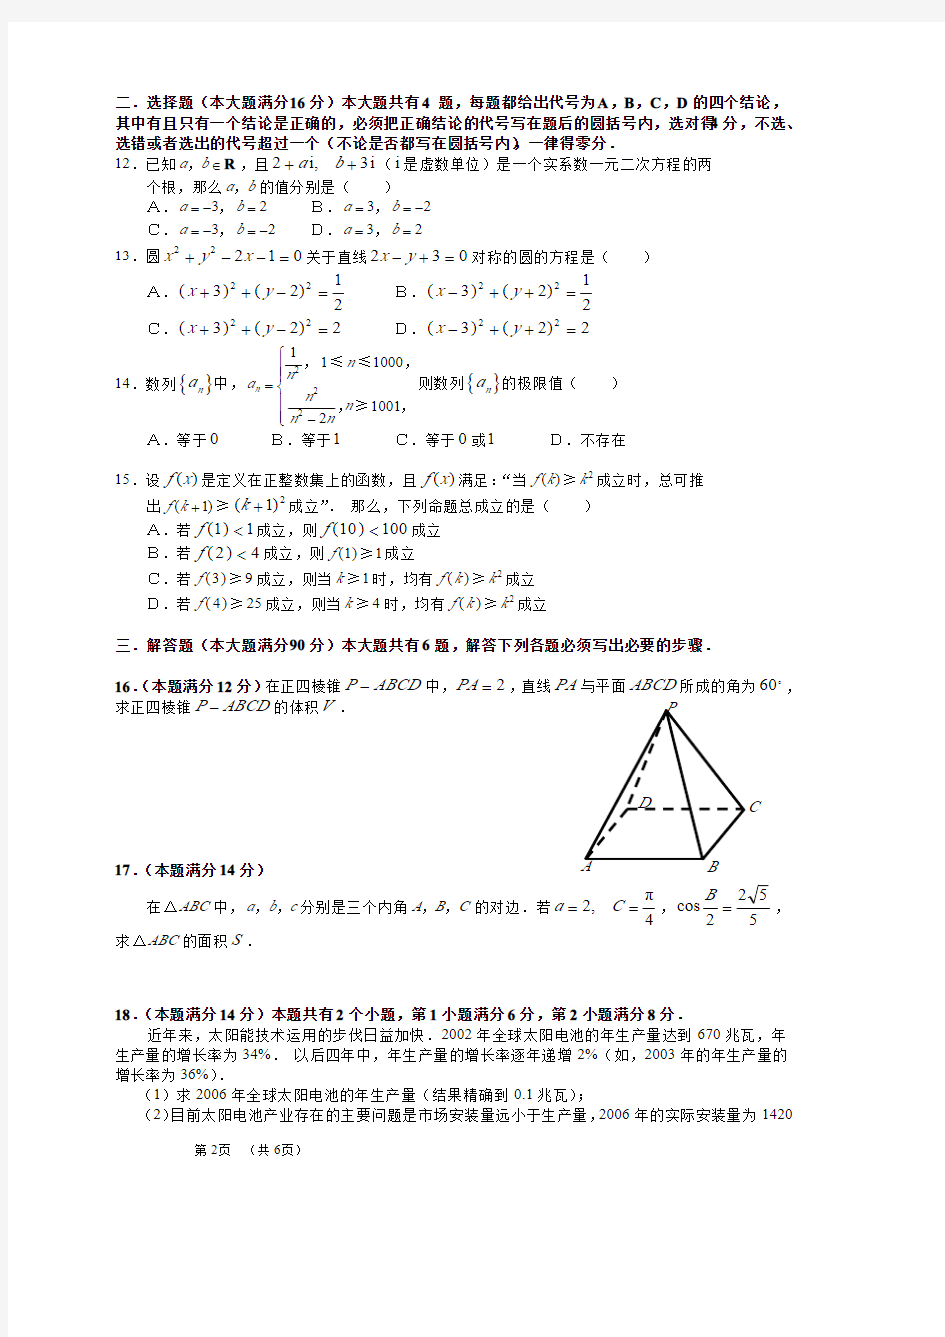 2007年高考.上海卷.文科数学试题及解答